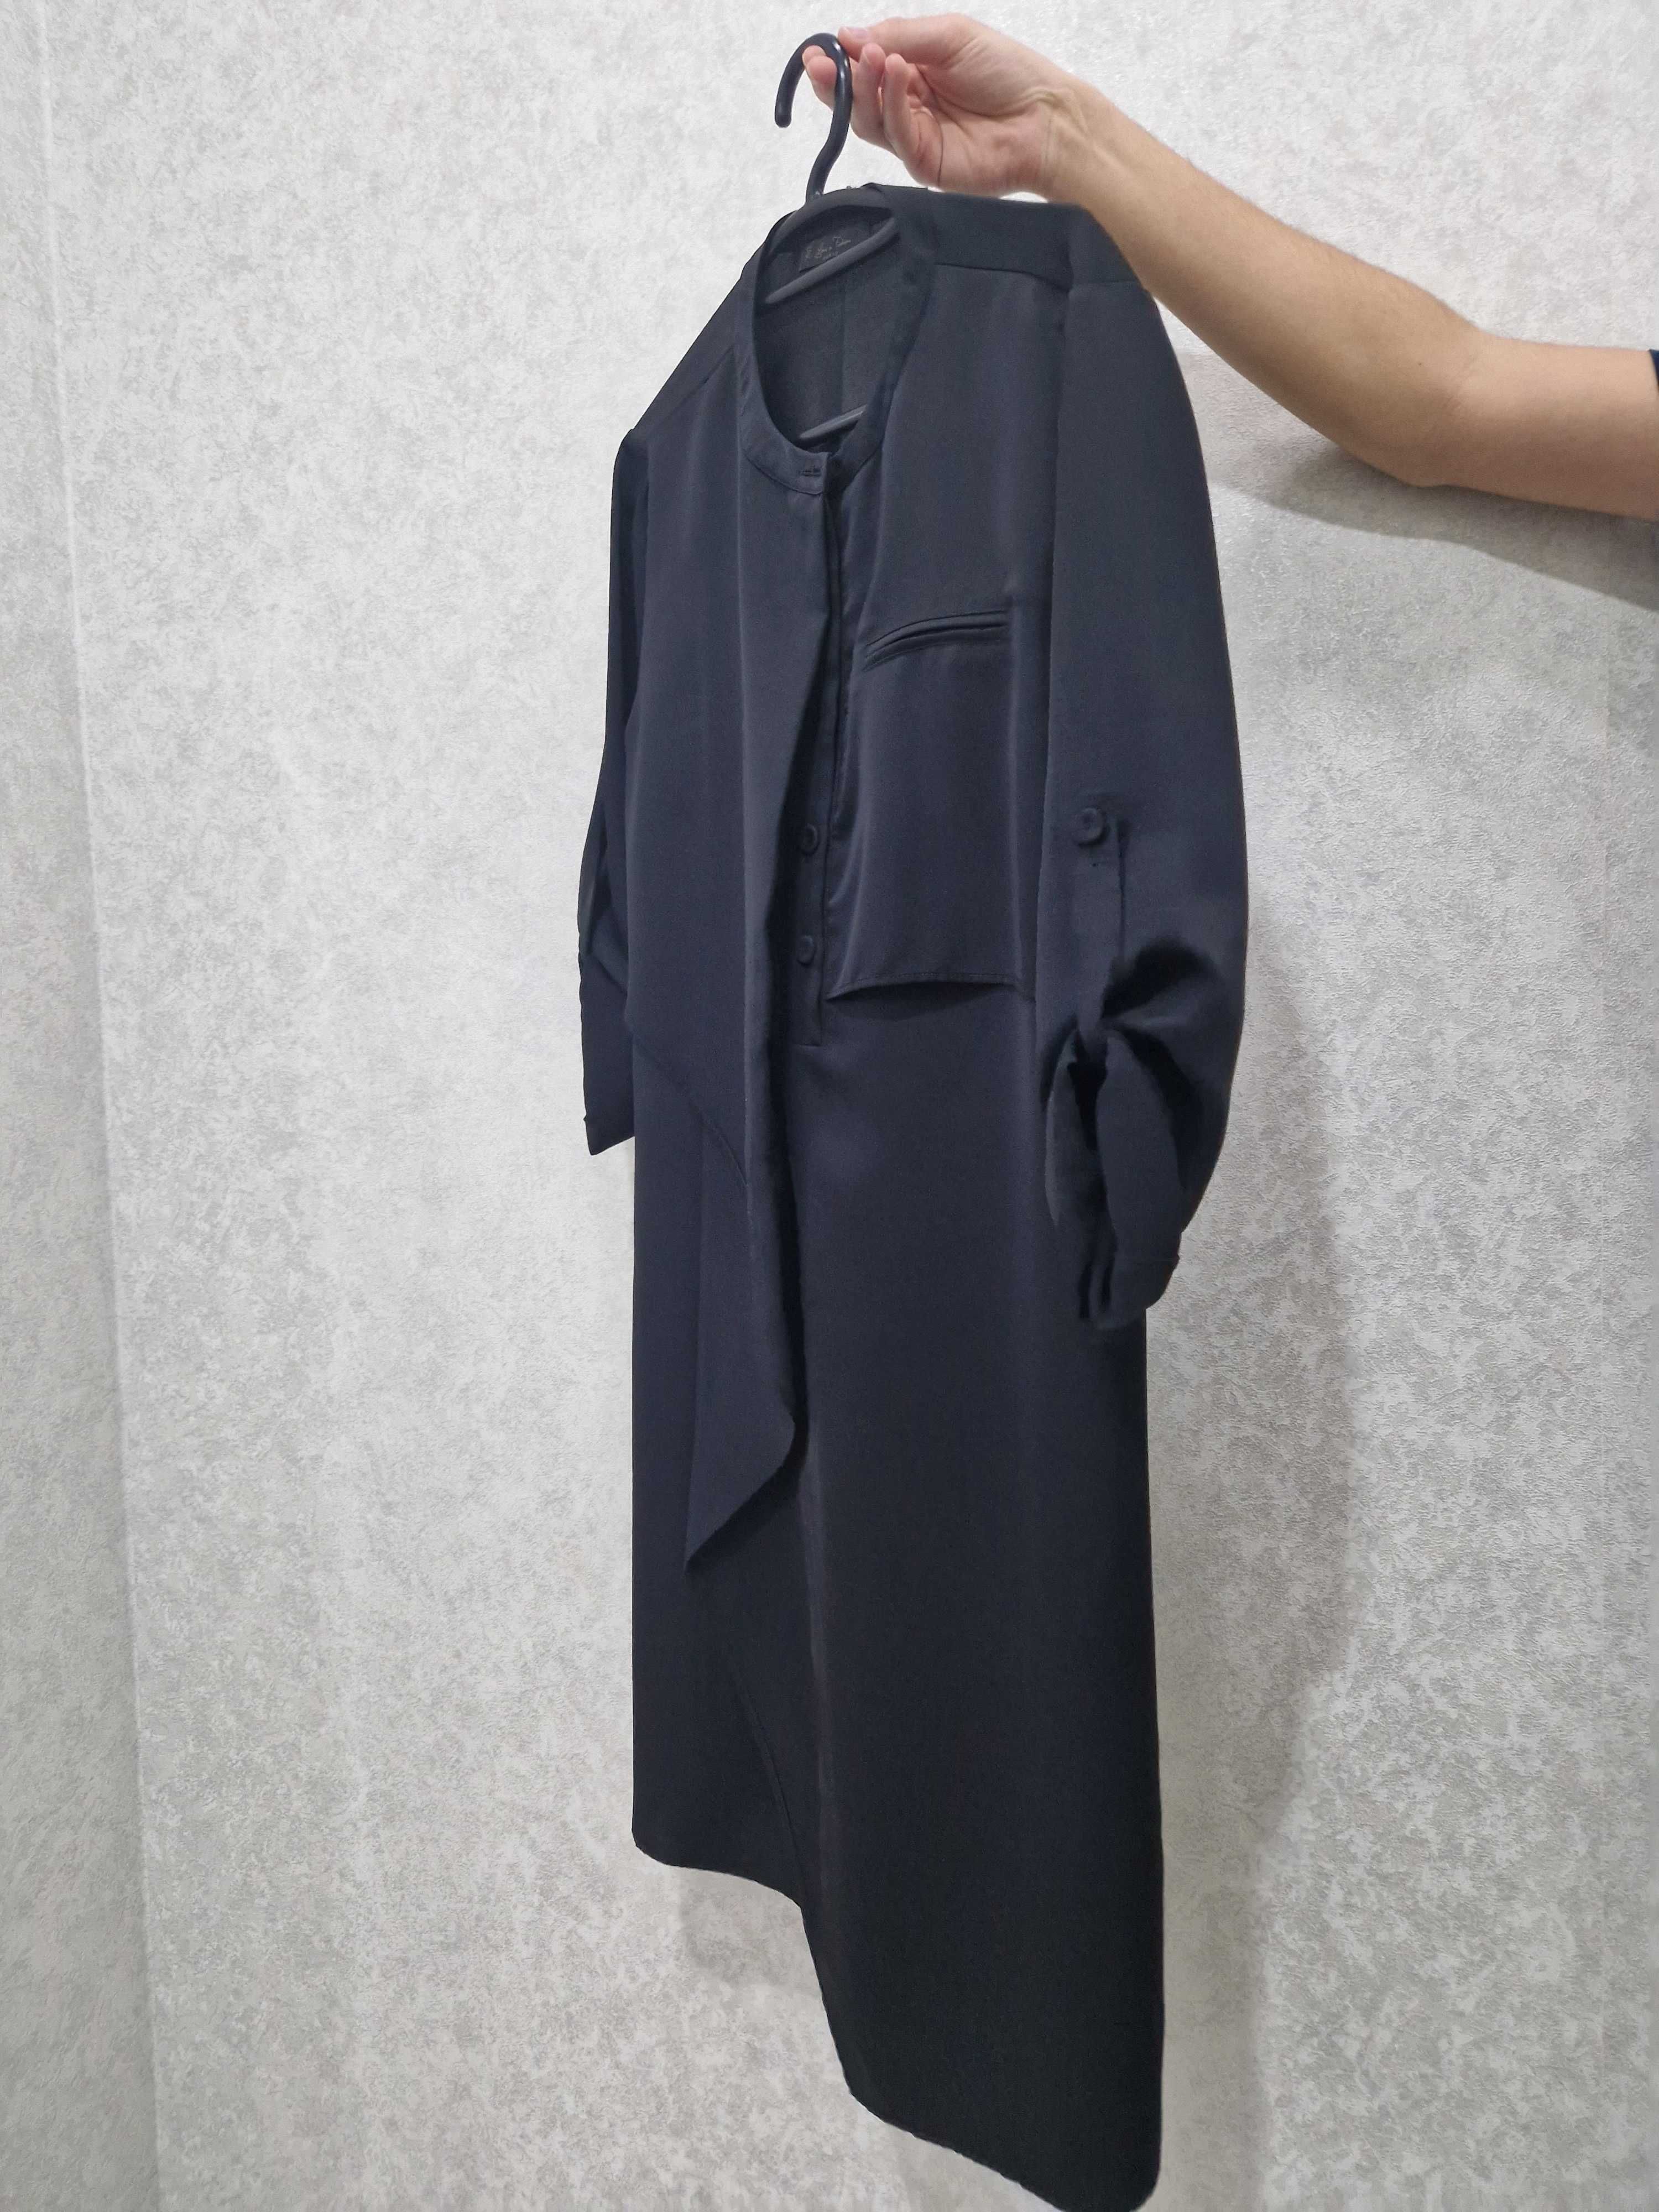 Продается женское платье, цена 10000тг СКИДКА!!! Фирма Paris